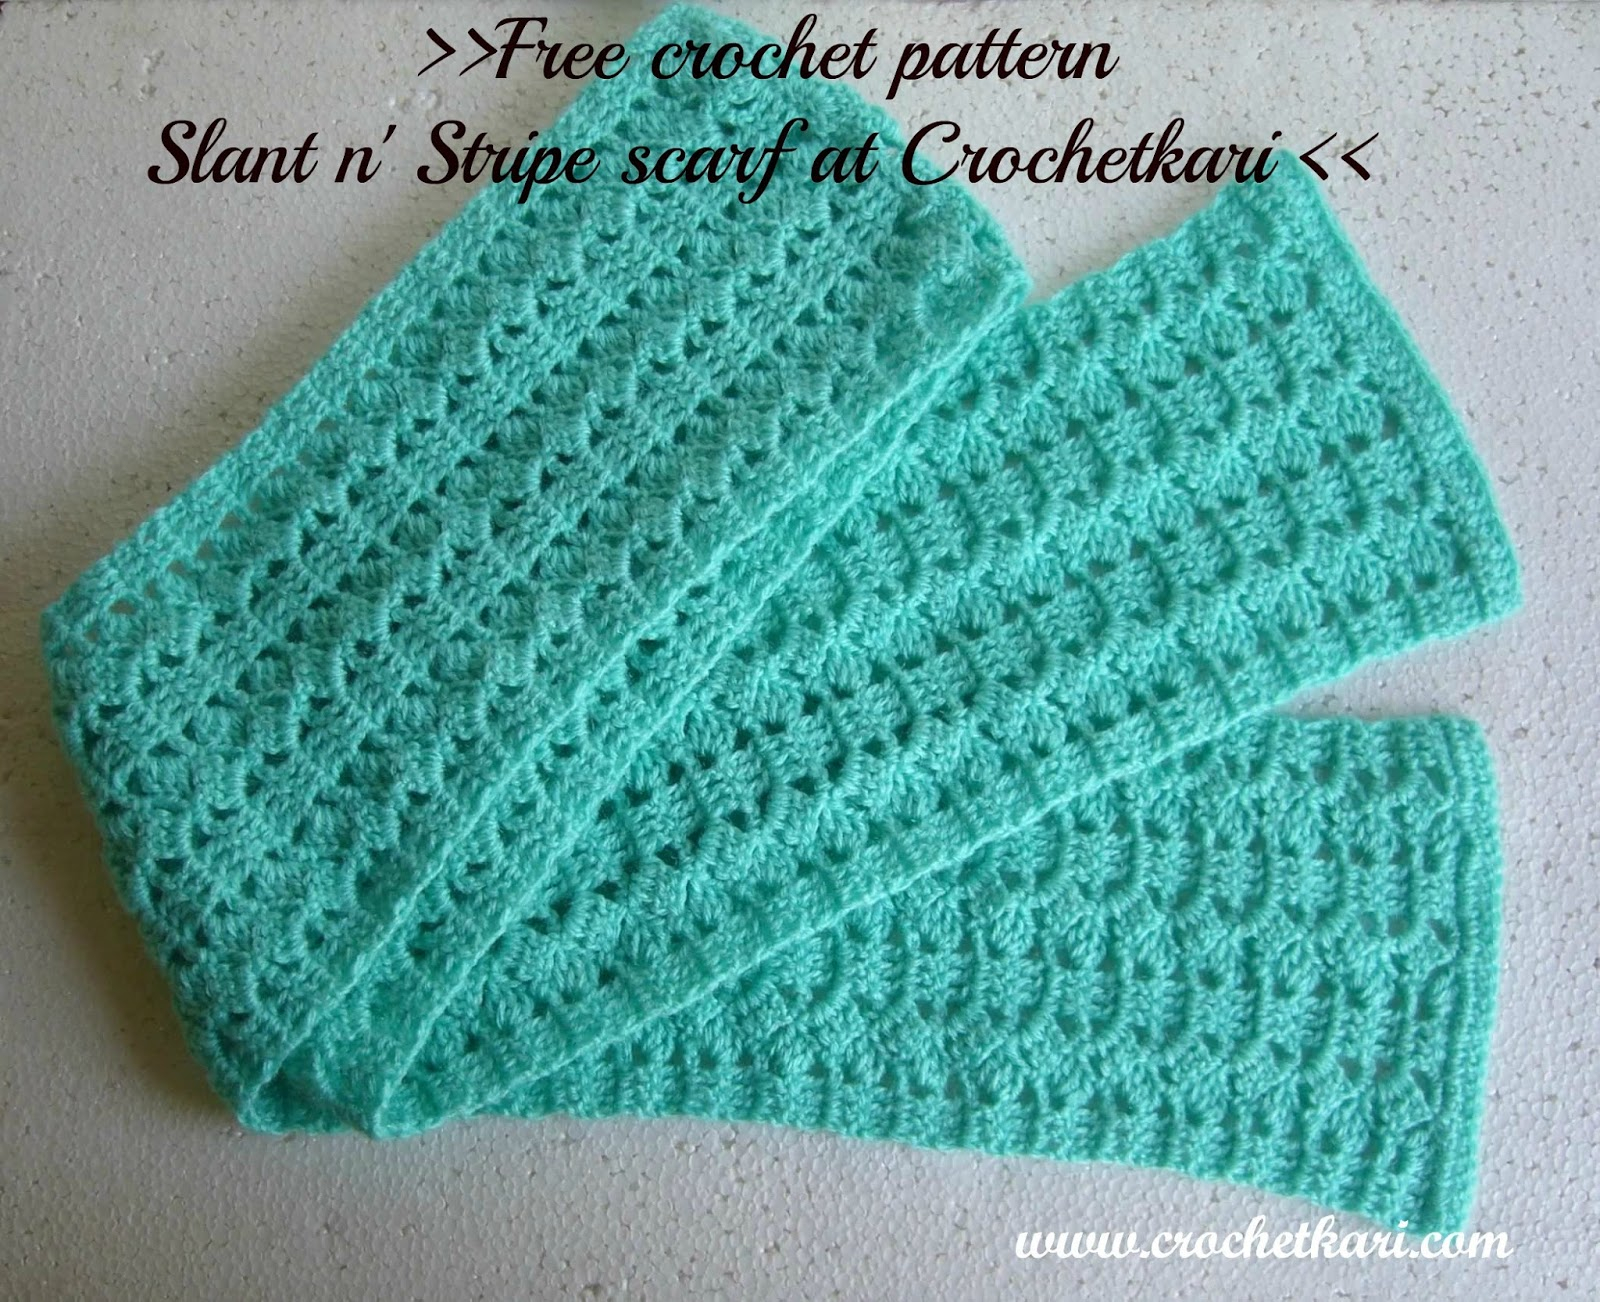 Free Patterns Crochet Crochetkari Free Crochet Pattern Slant N Stripe Scarf